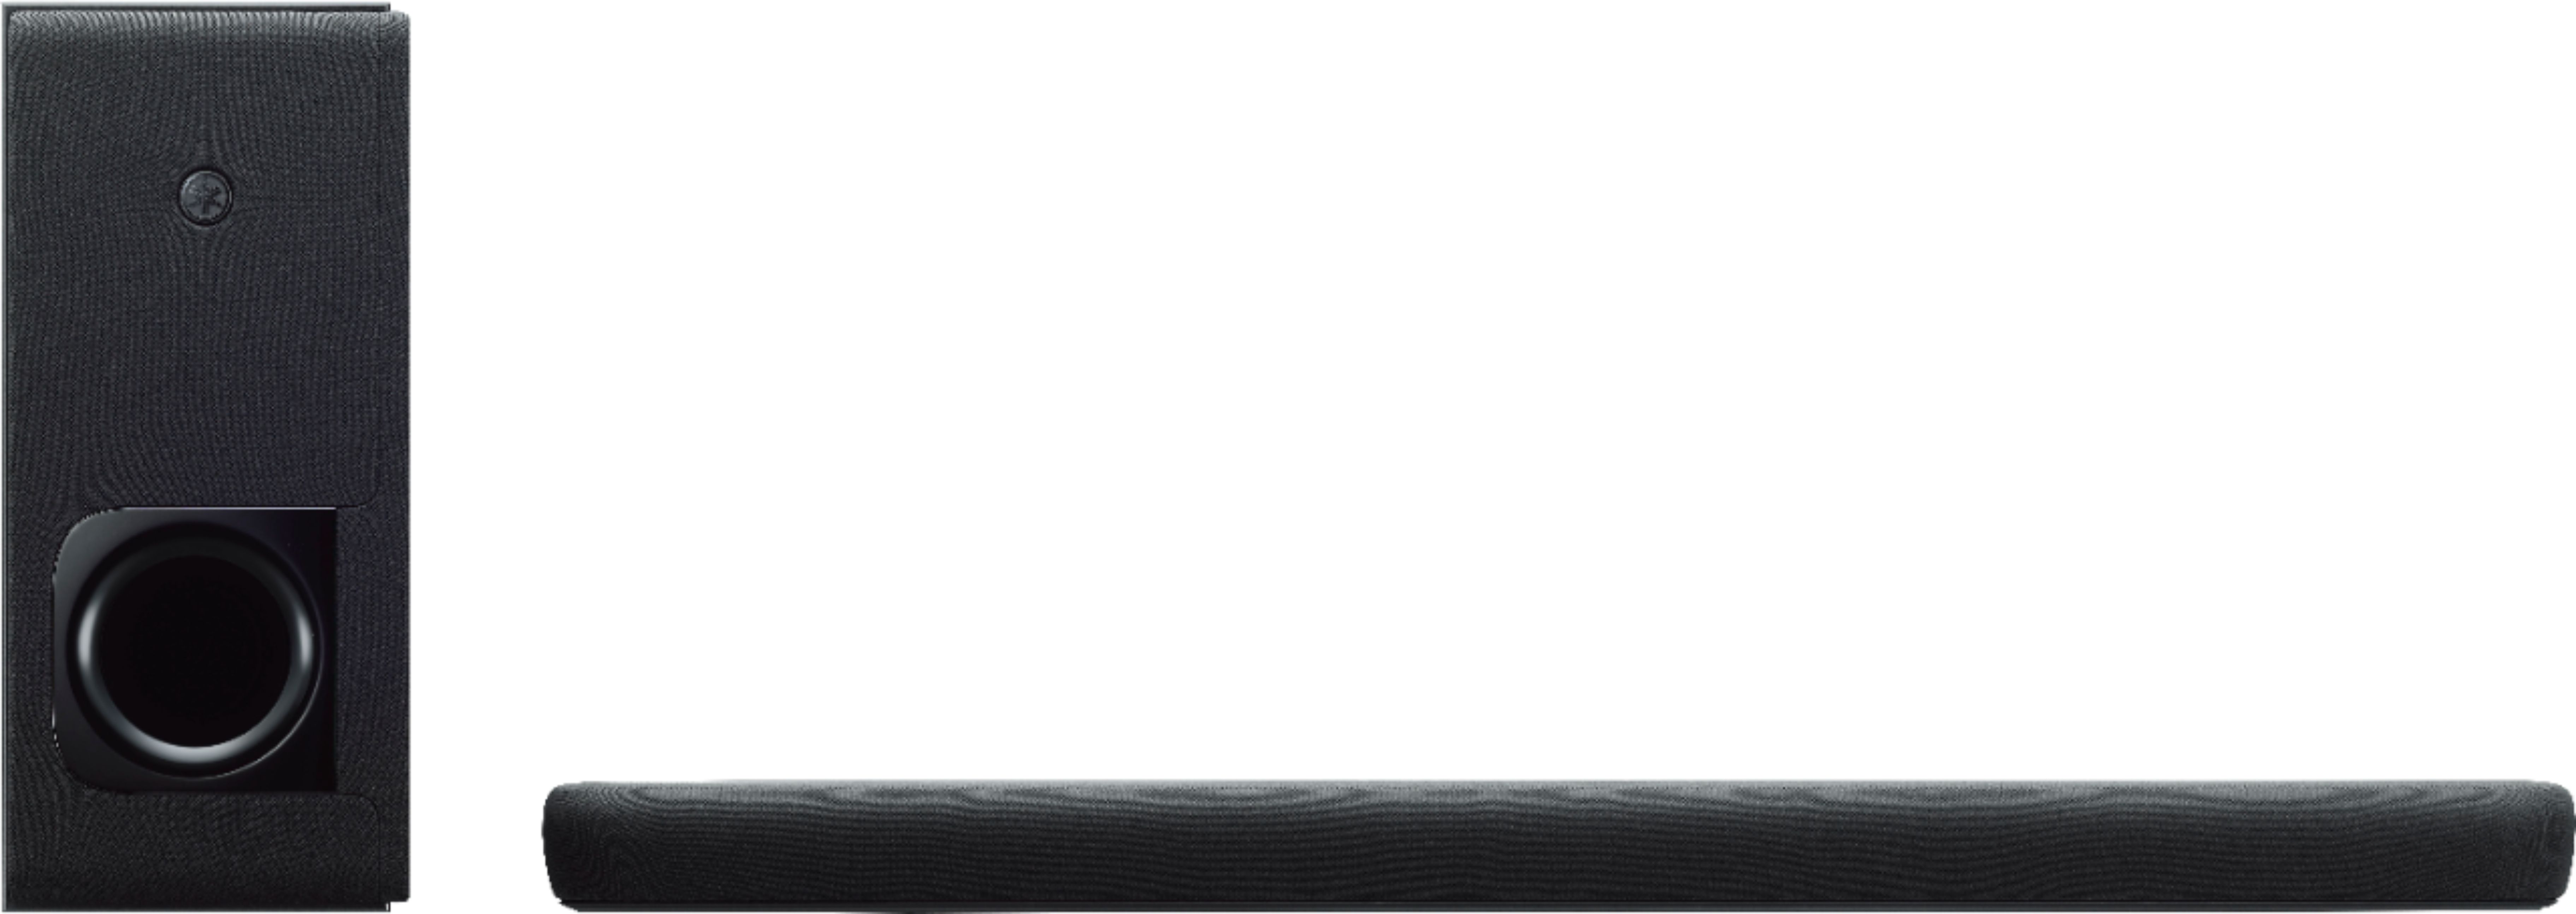 Best Buy: Yamaha 2.1-Channel Soundbar with Wireless